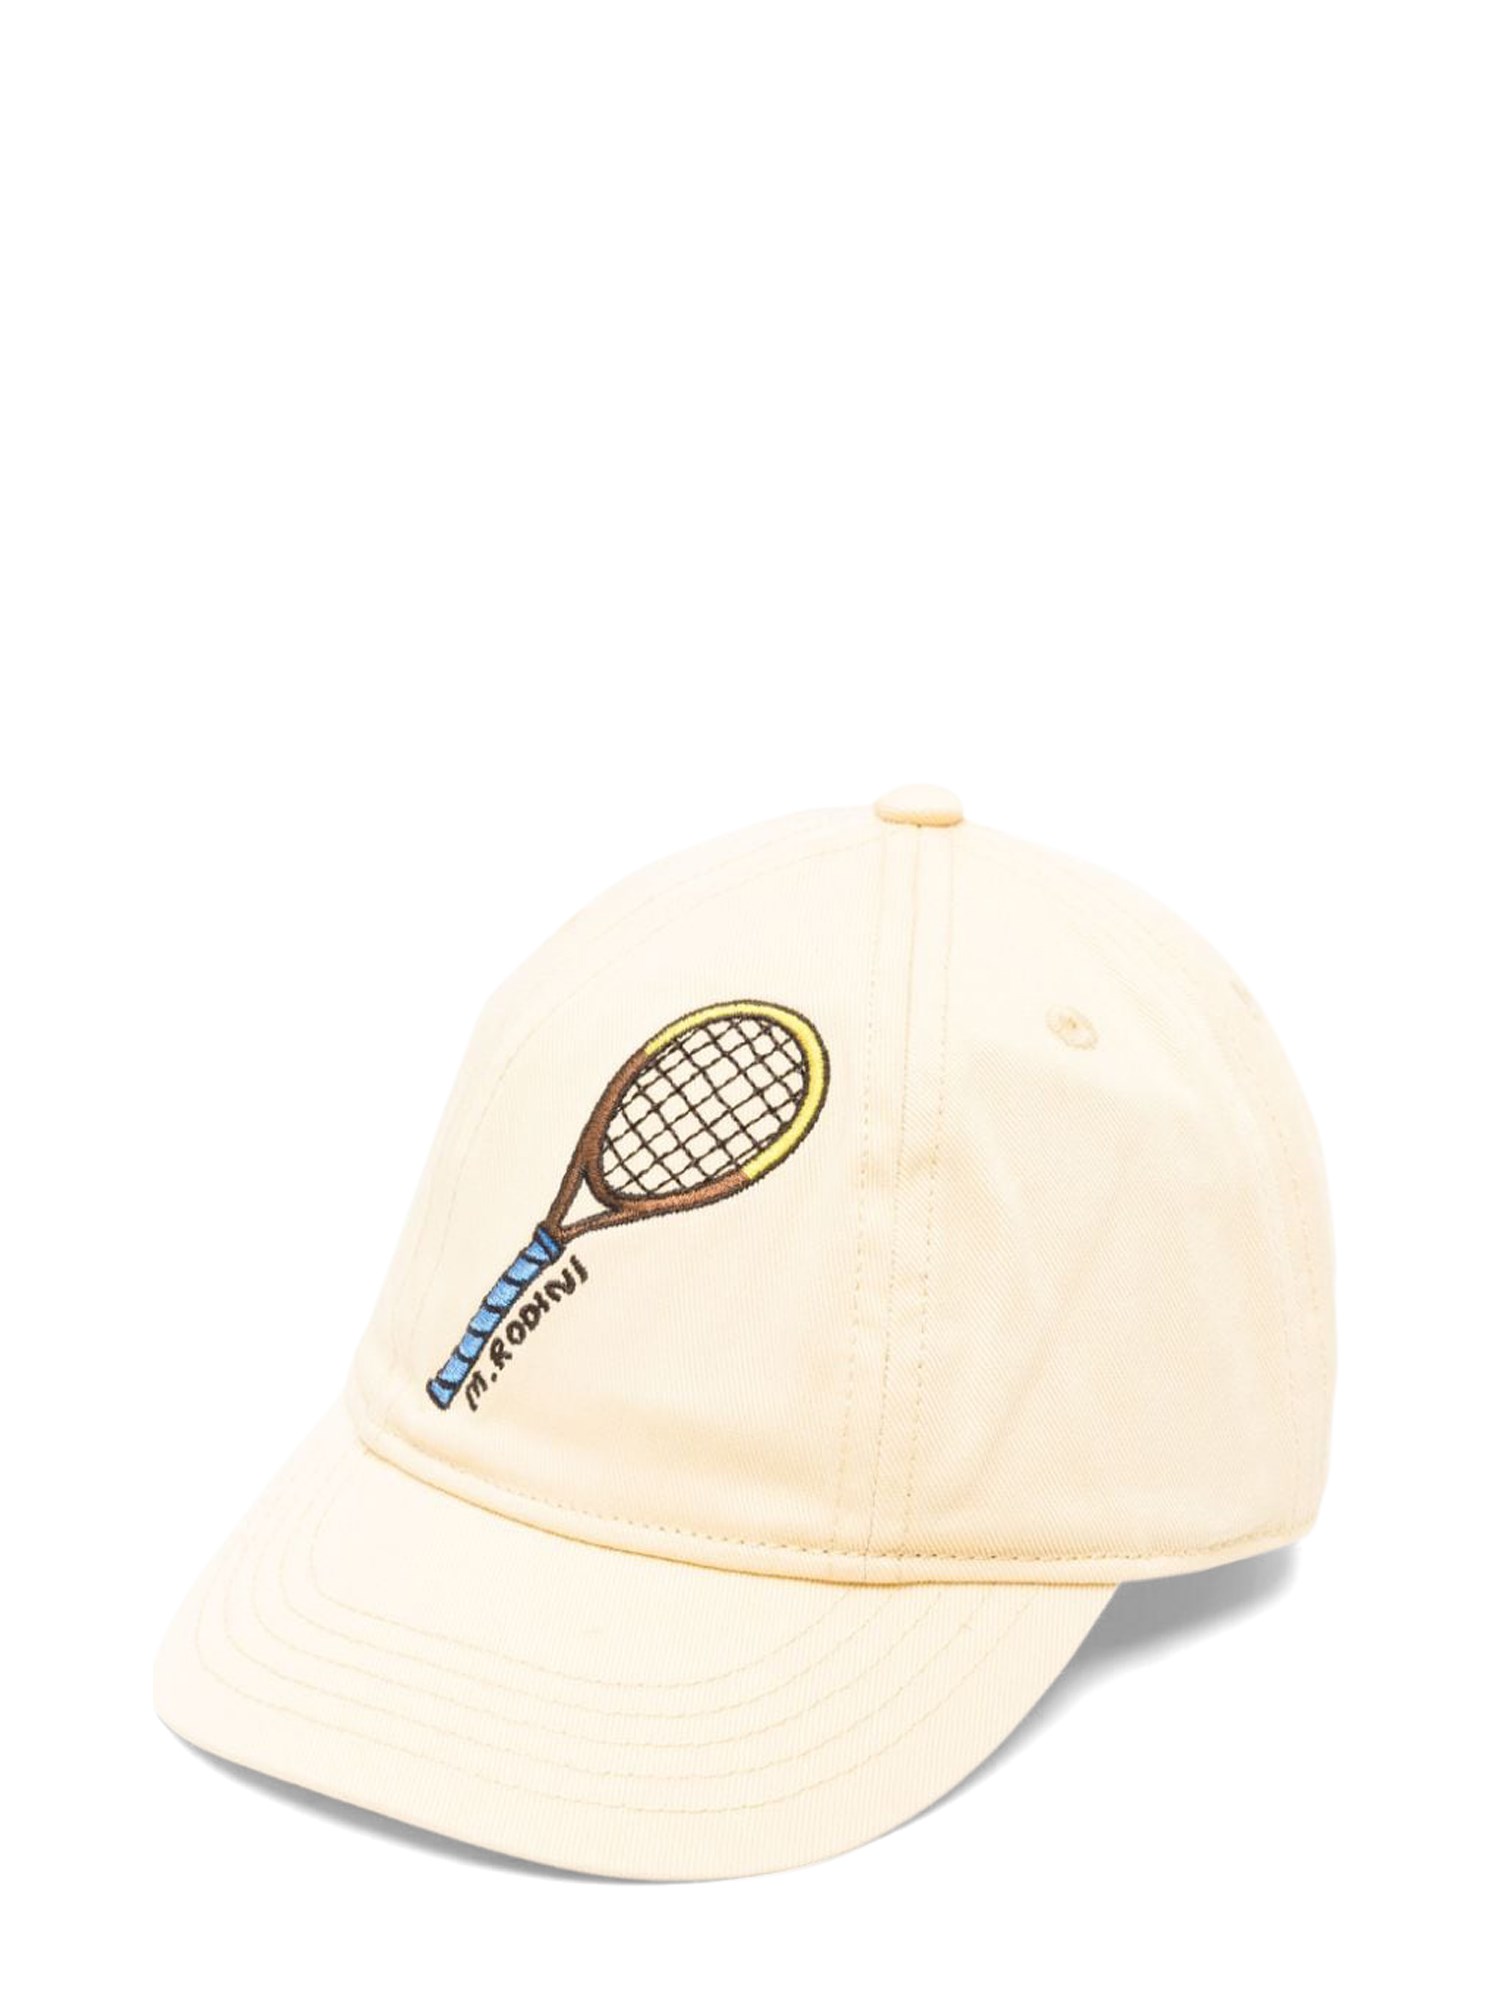 Mini Rodini mini rodini tennis emb cap - chapter 2 - limited stock